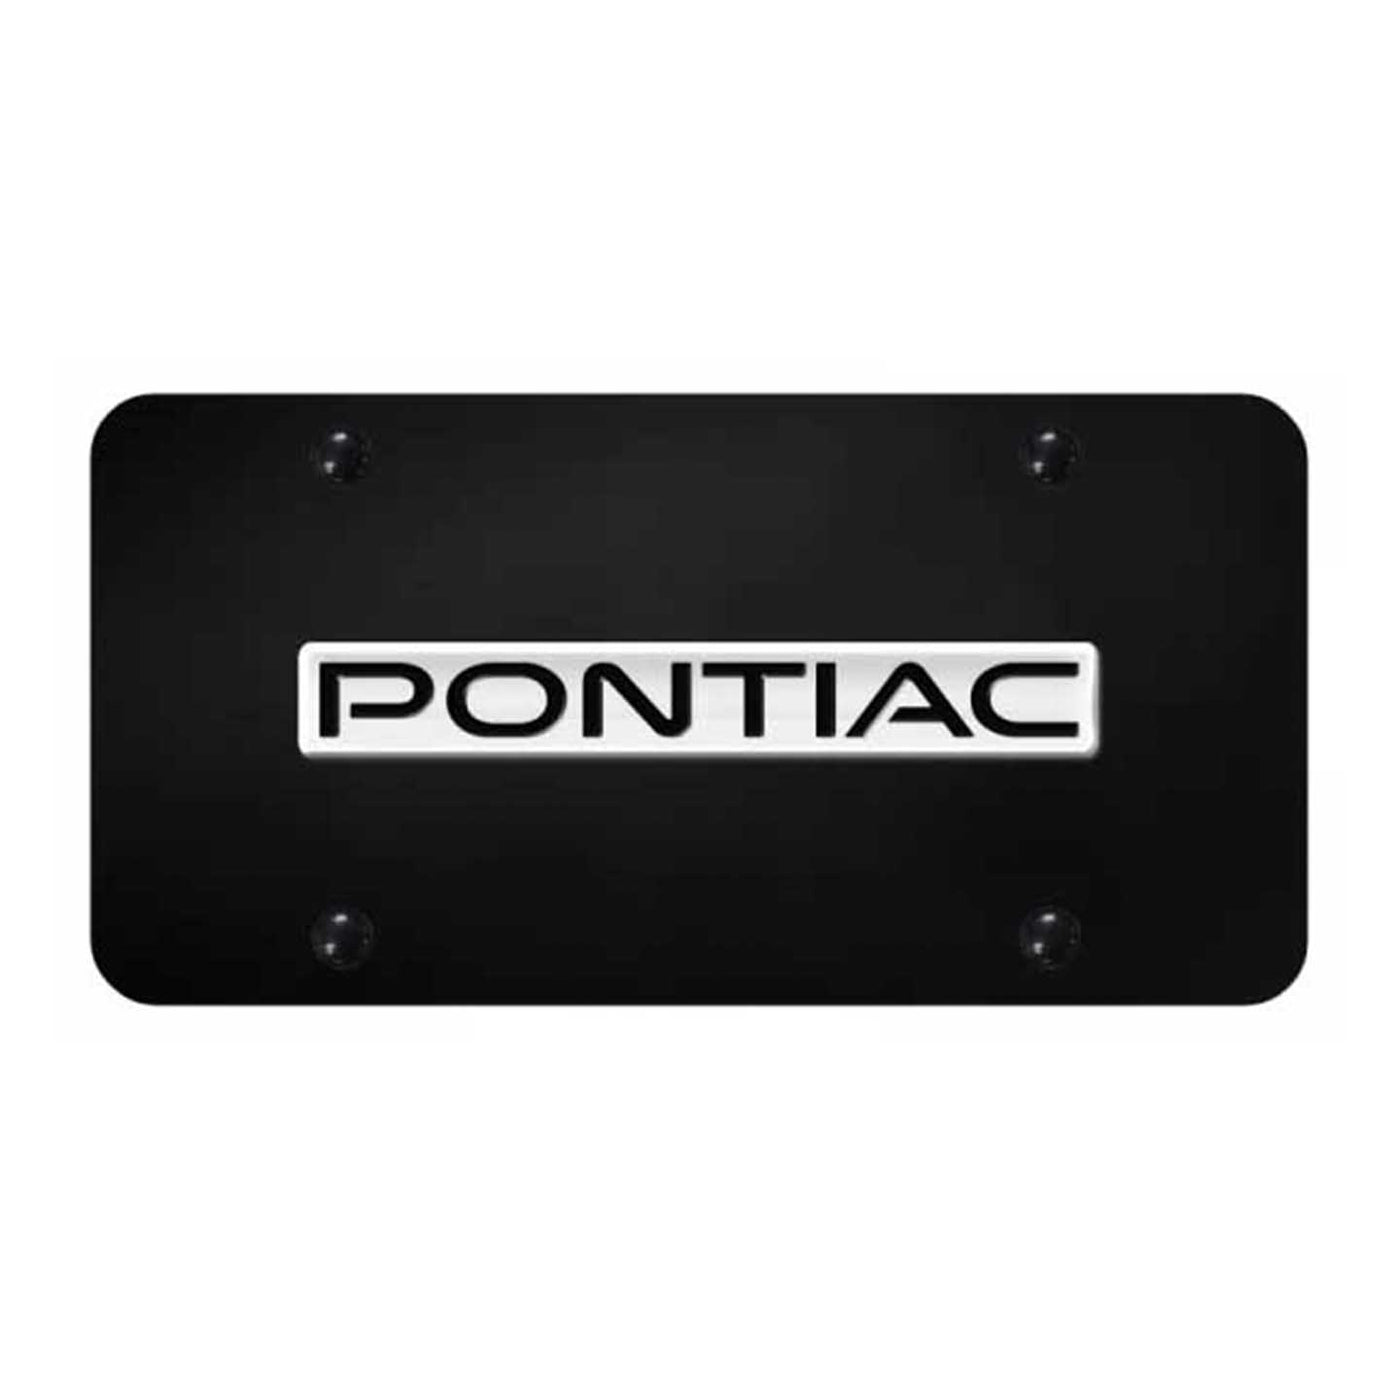 Pontiac Name License Plate - Chrome on Black